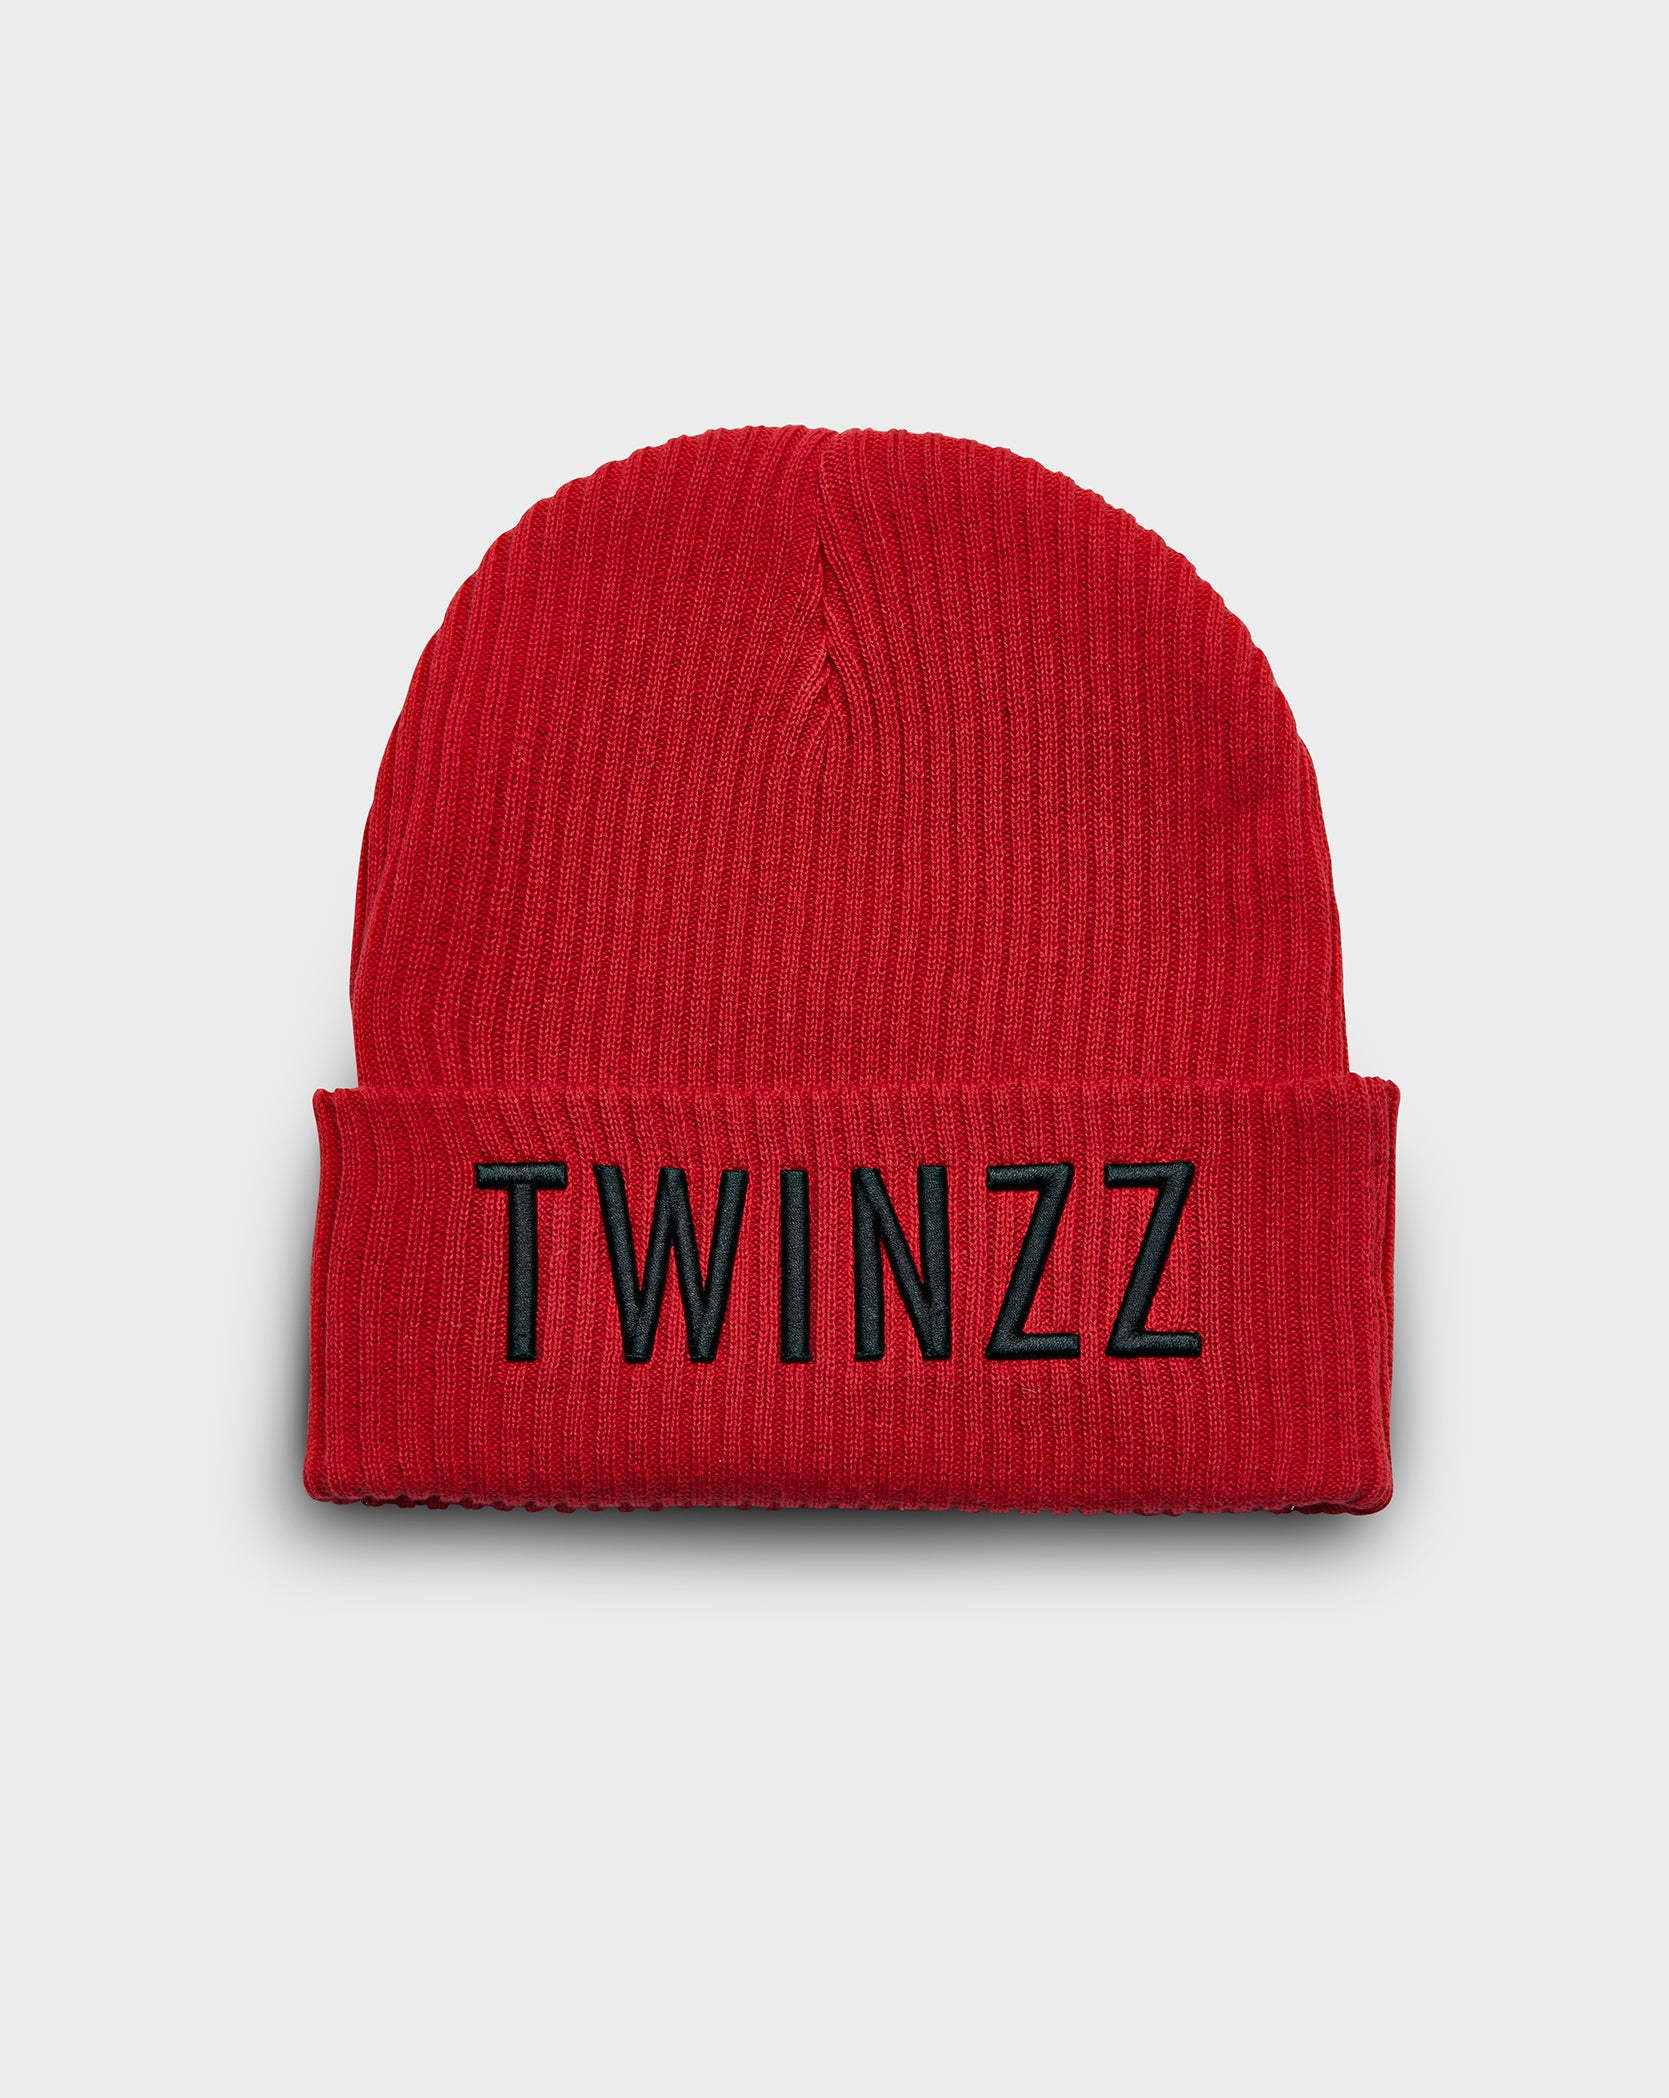 Twinzz logo red knit beanie